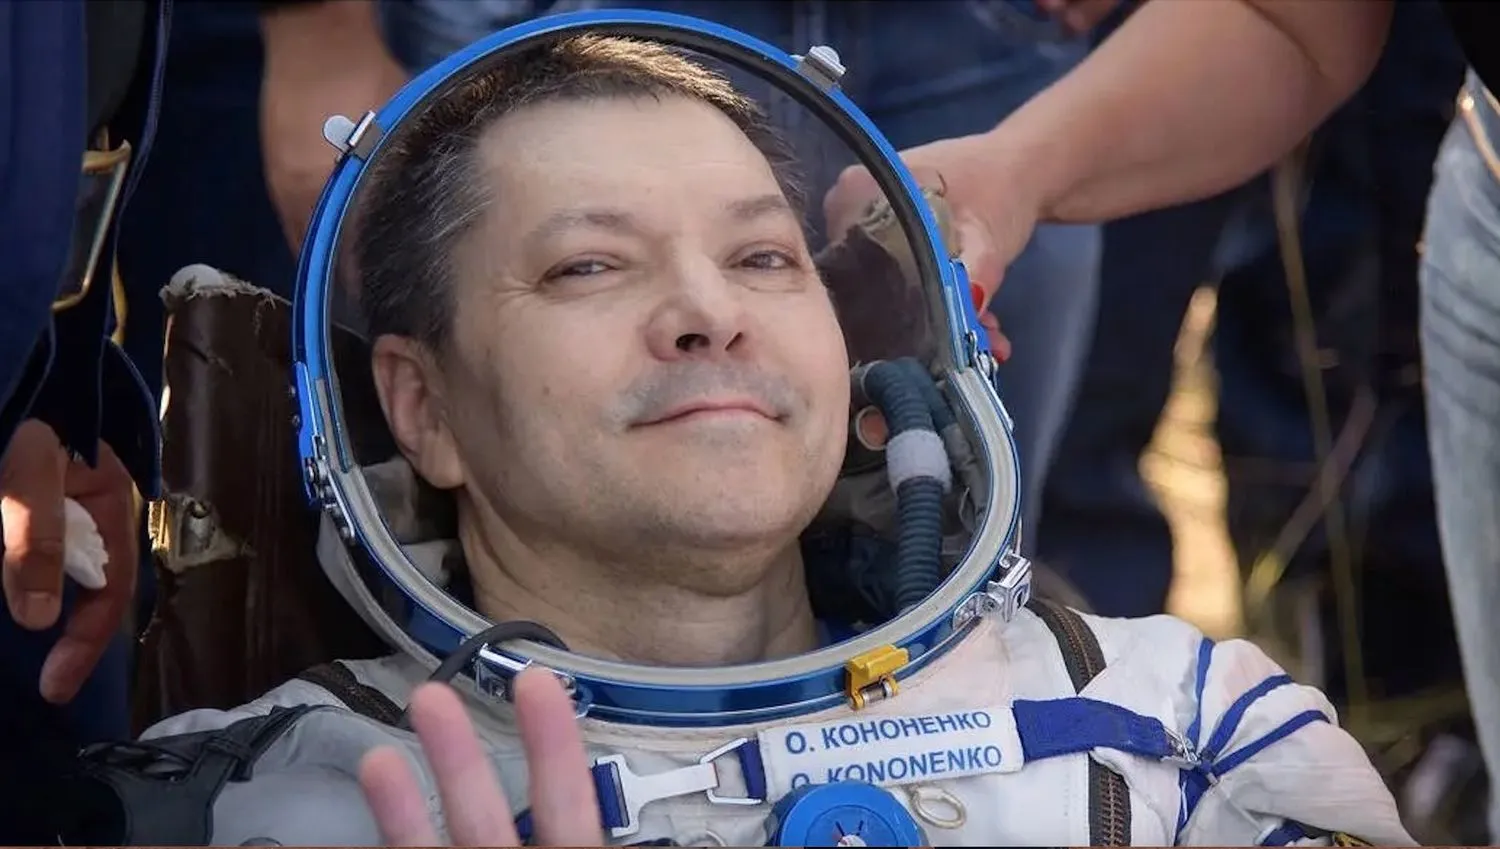 Mehr über den Artikel erfahren 878 Tage! Russischer Kosmonaut bricht Rekord bei der Aufenthaltsdauer im Weltraum